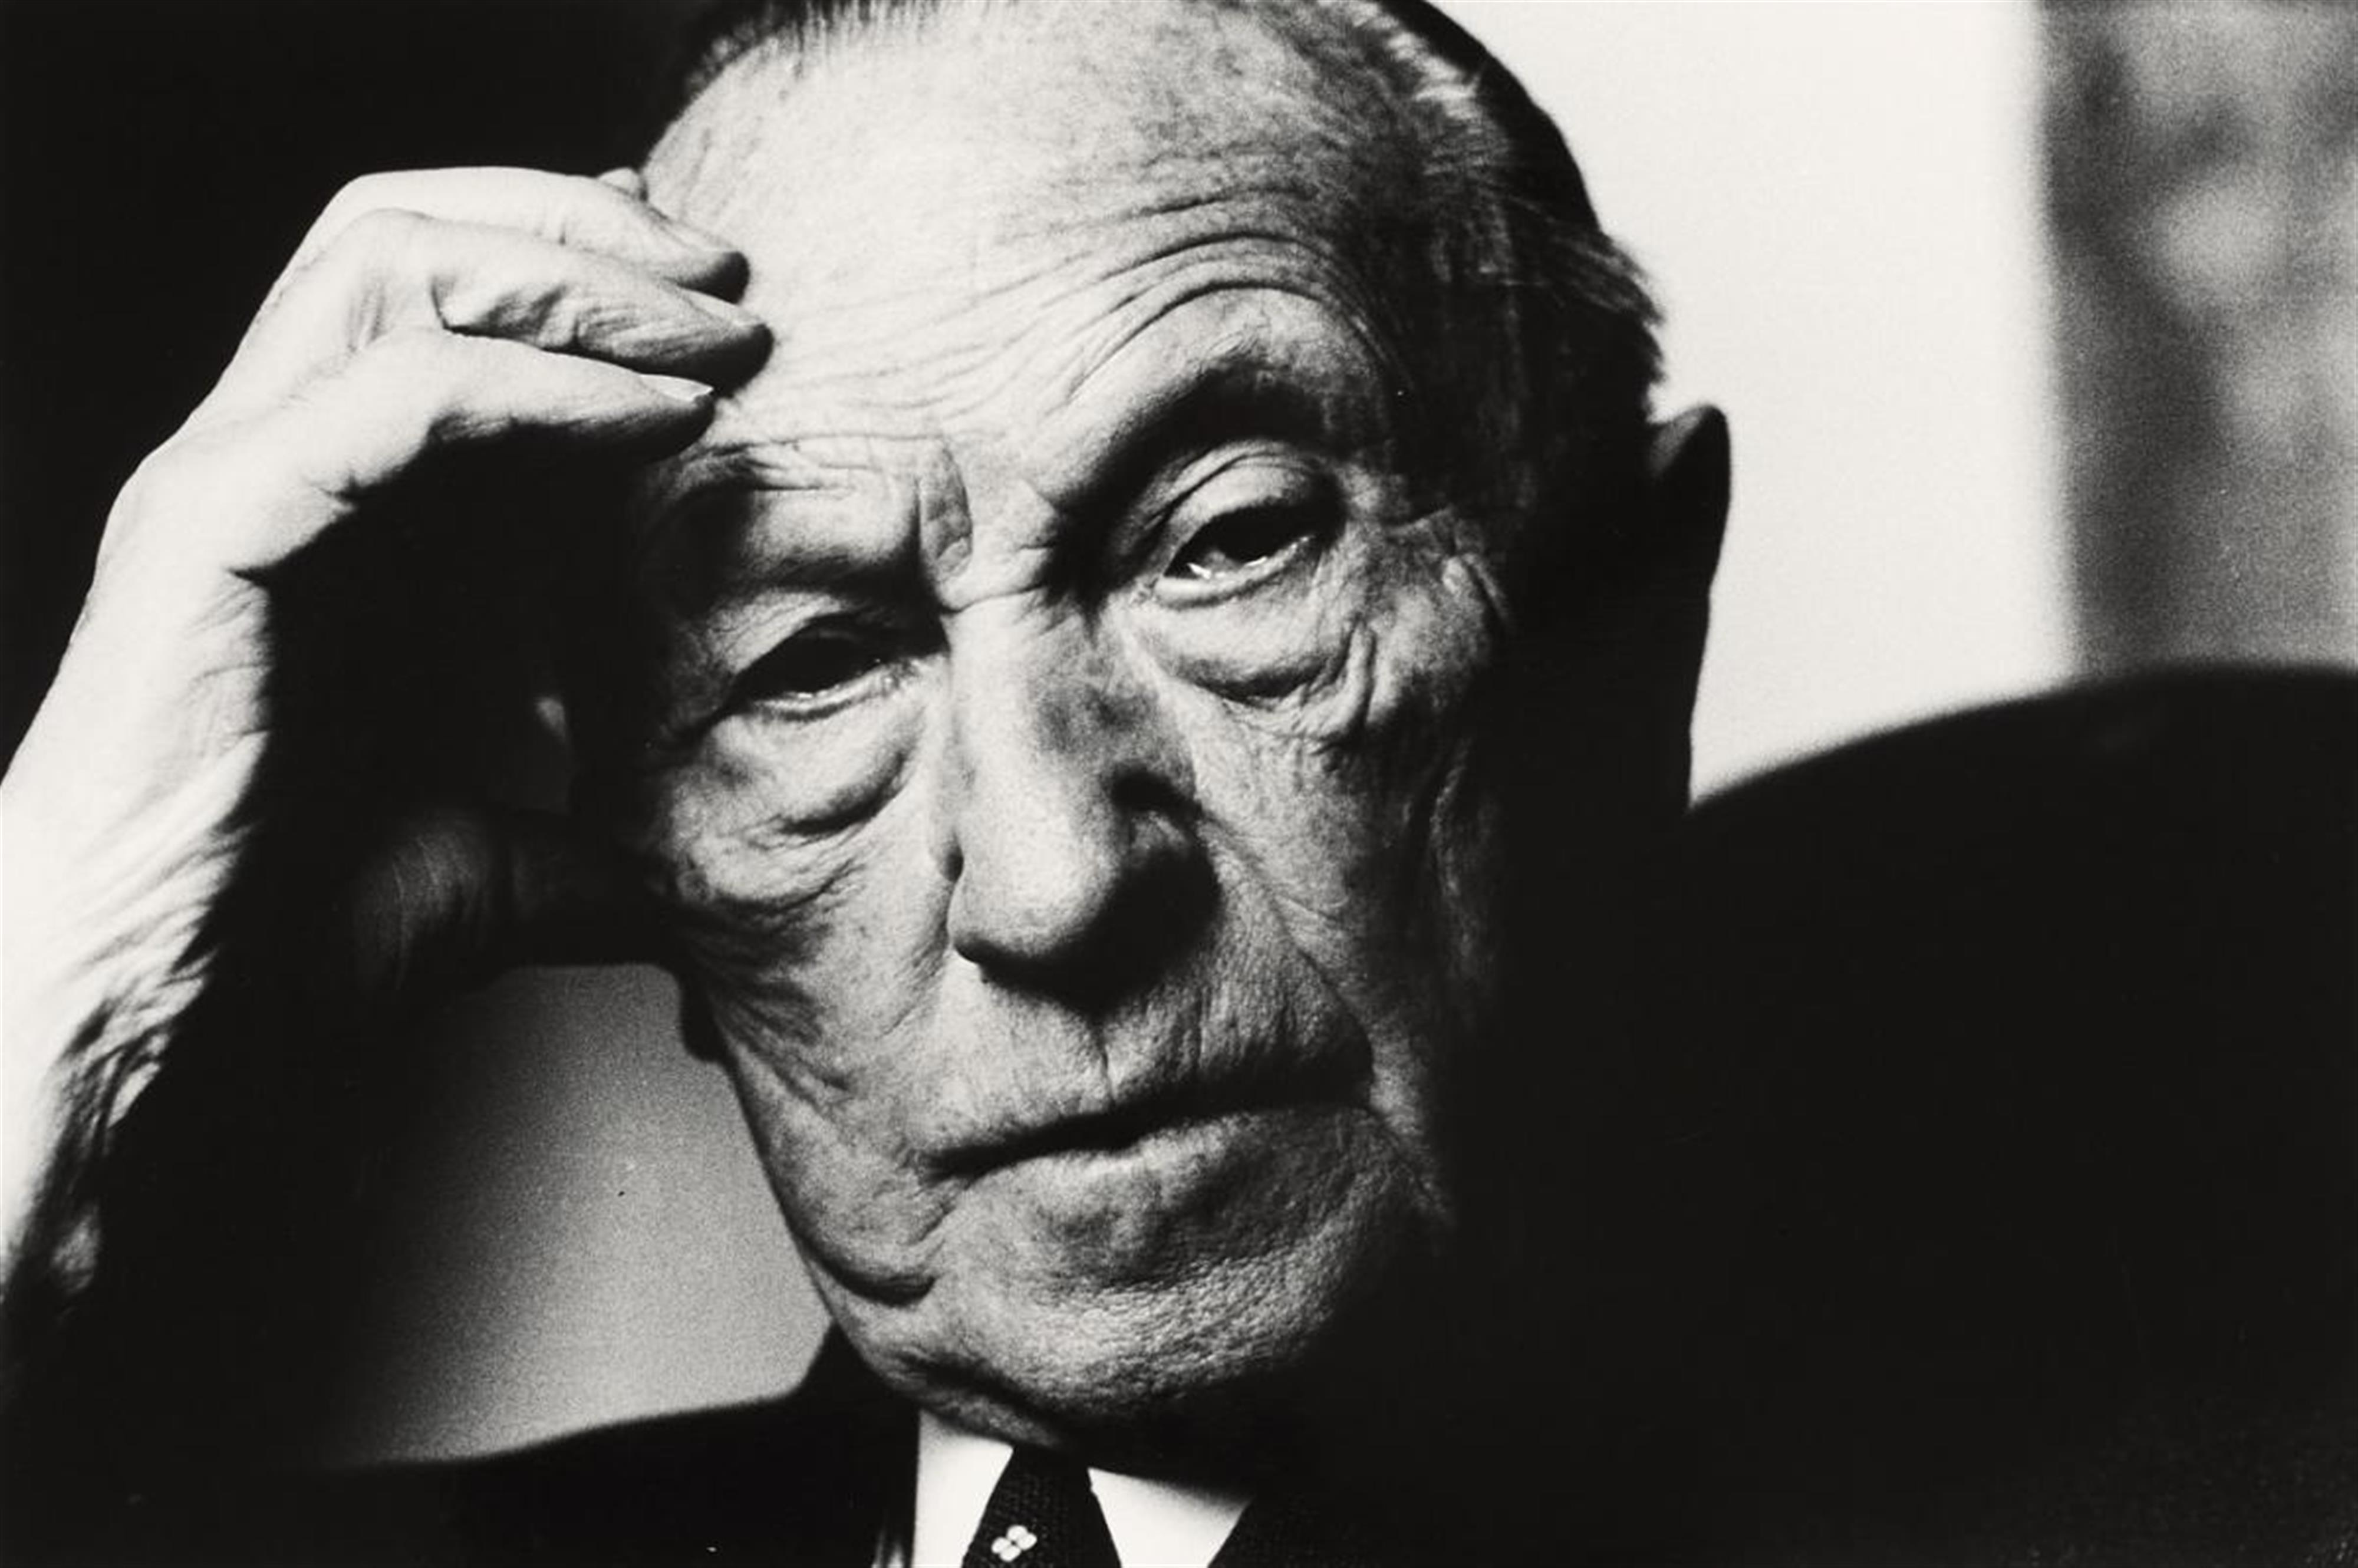 Will McBride - Konrad Adenauer in Cadennabia, Italien (Konrad Adenauer in Cadennabia, Italy) - image-1